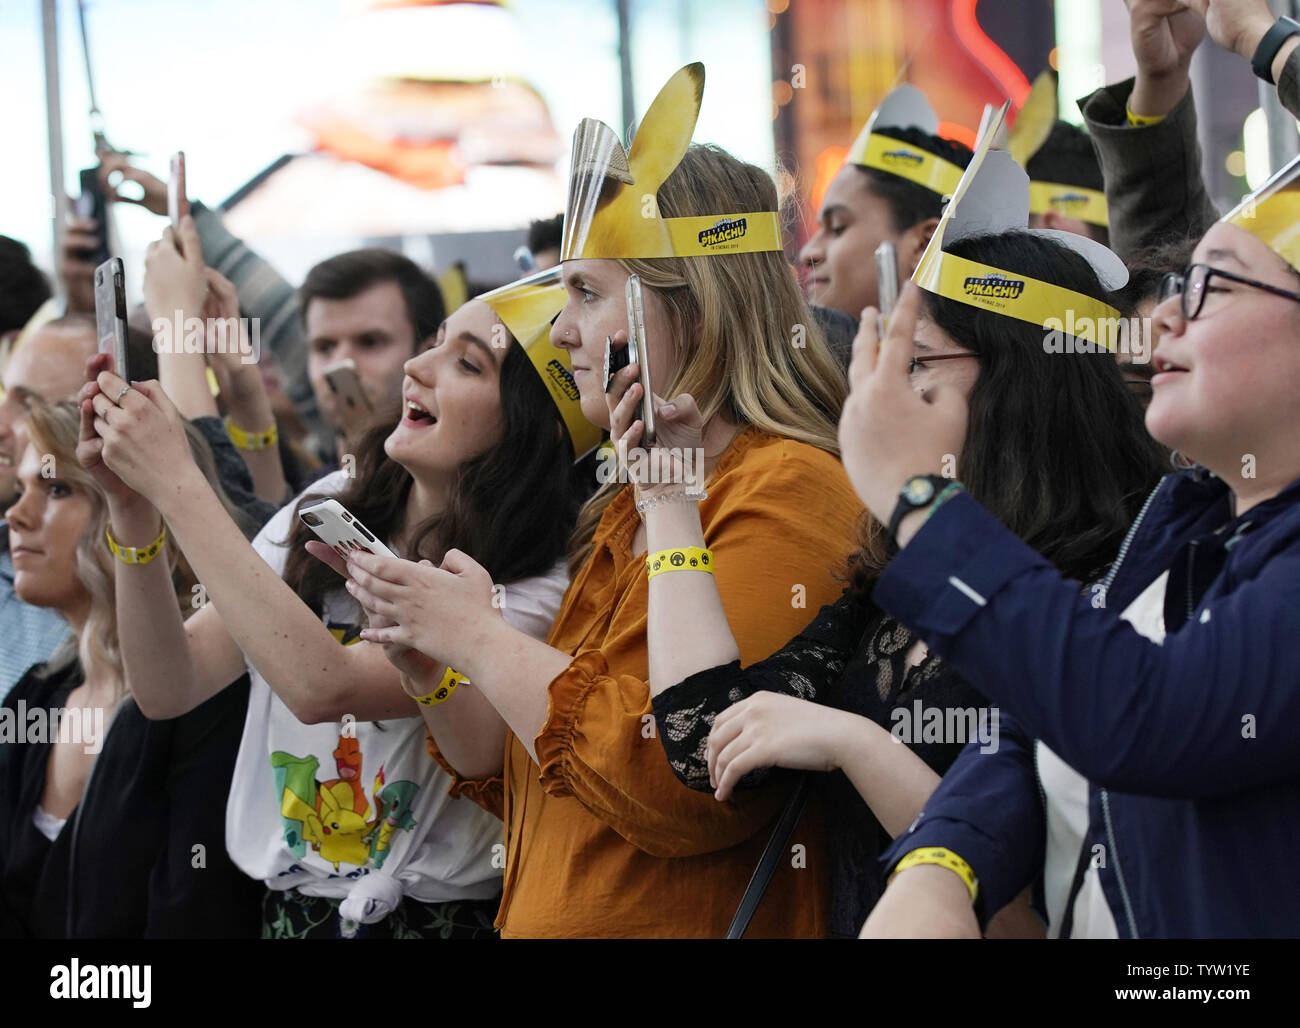 Fans réagissent comme talent arrive à la détective Pokemon Pikachu U.S. Premiere sur Times Square, sur Mai 02, 2019 à New York. Photo de John Angelillo/UPI Banque D'Images